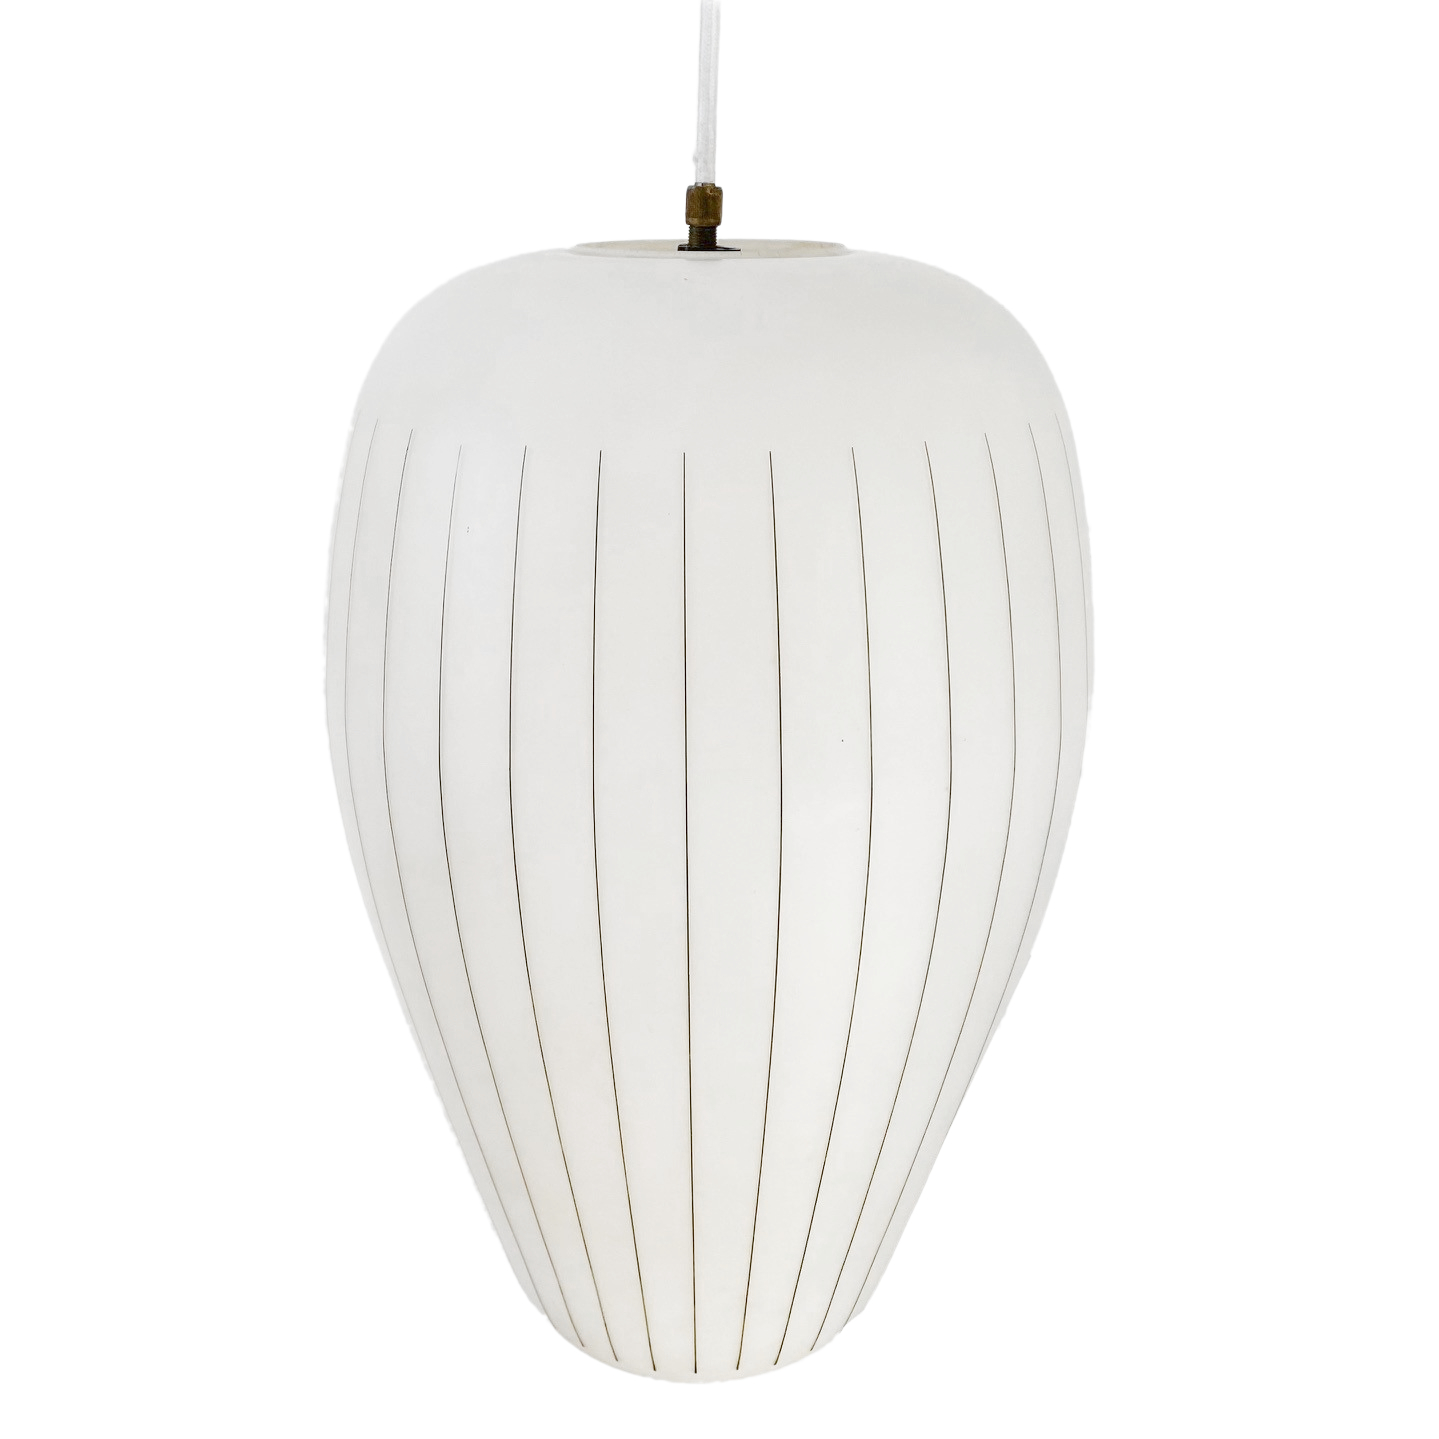 Louis Kalff glazen hanglamp Philips wit melkglas jaren 60